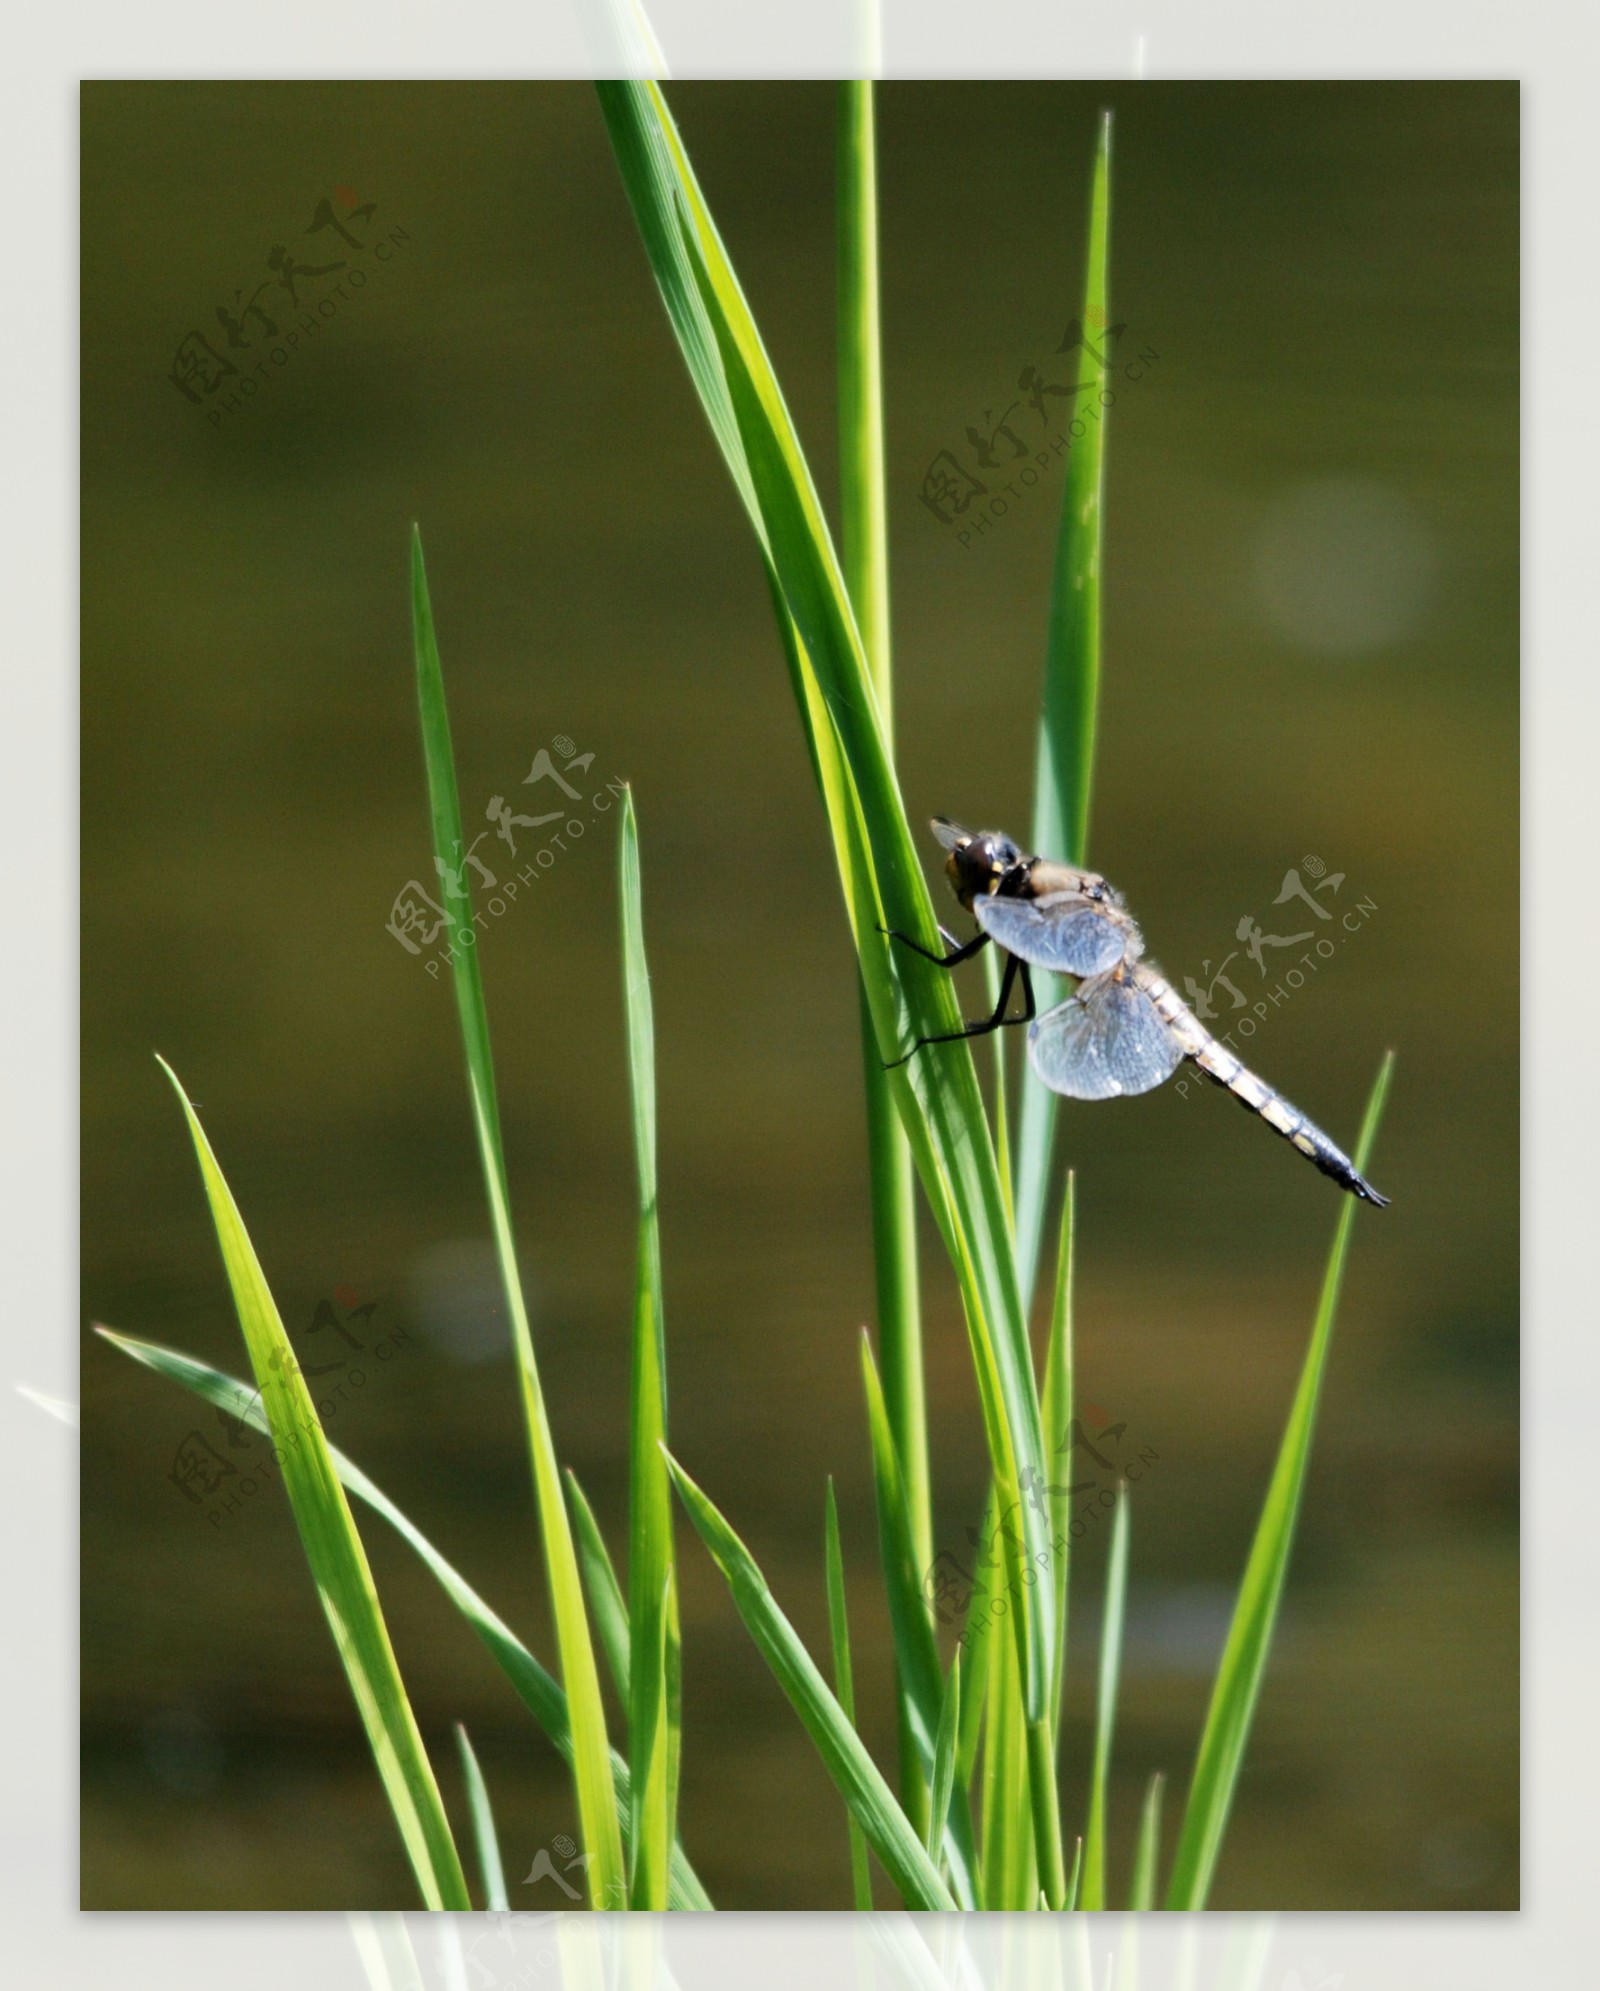 落在草丛上蜻蜓图片